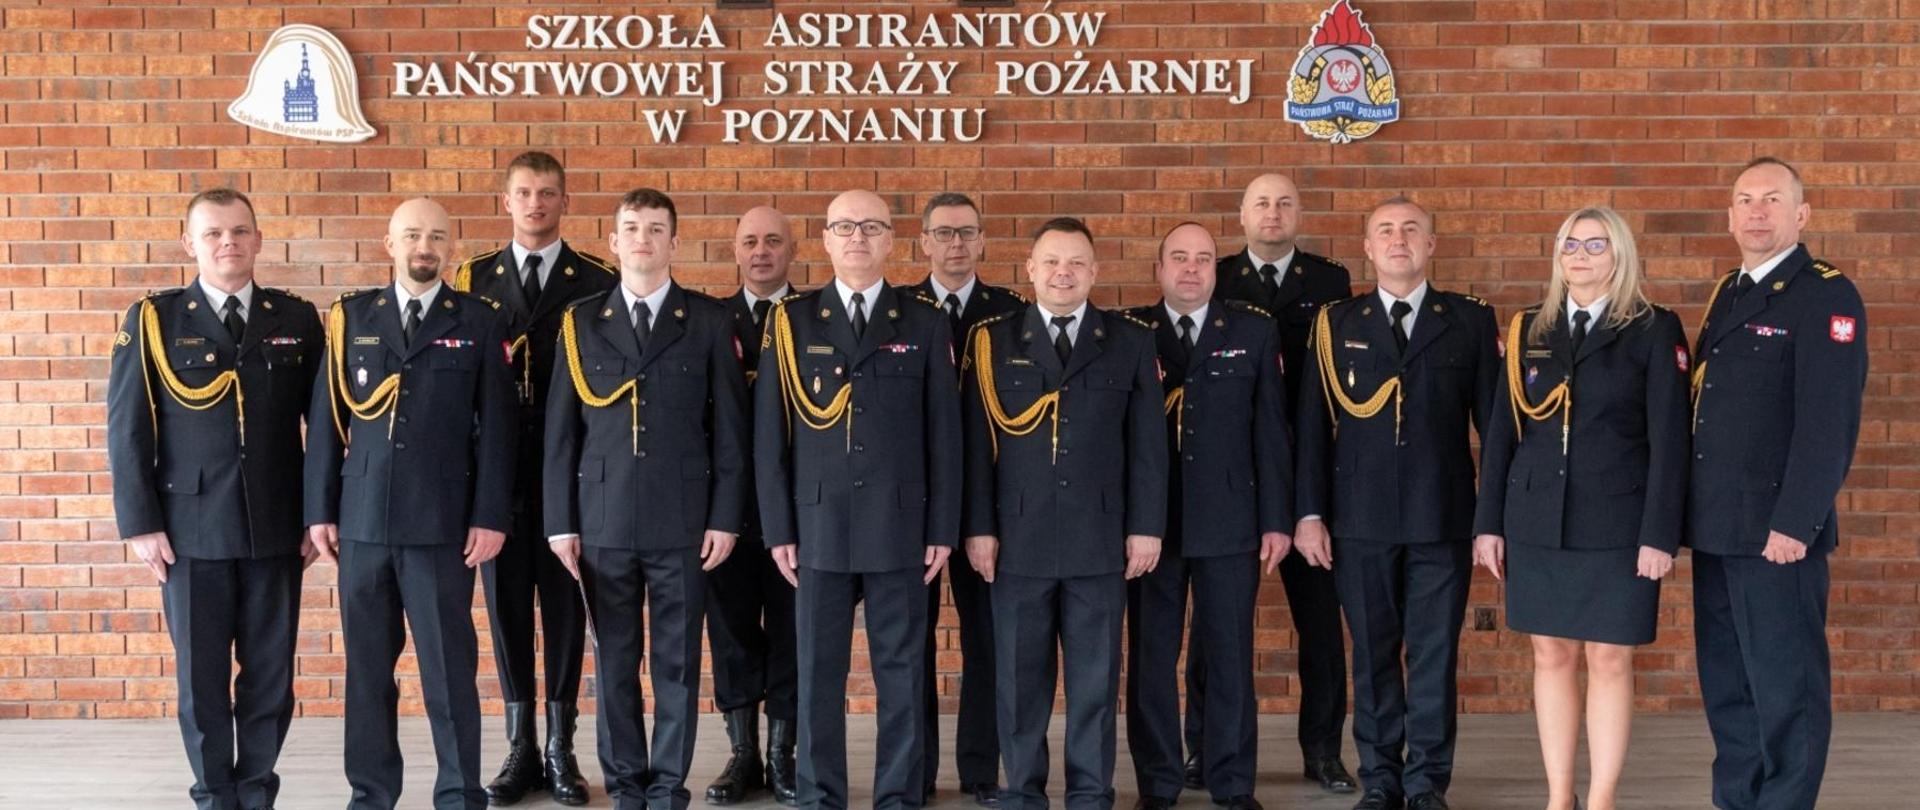 Ślubowanie nowo przyjętego strażaka w Szkole Aspirantów Państwowej Straży Pożarnej w Poznaniu.